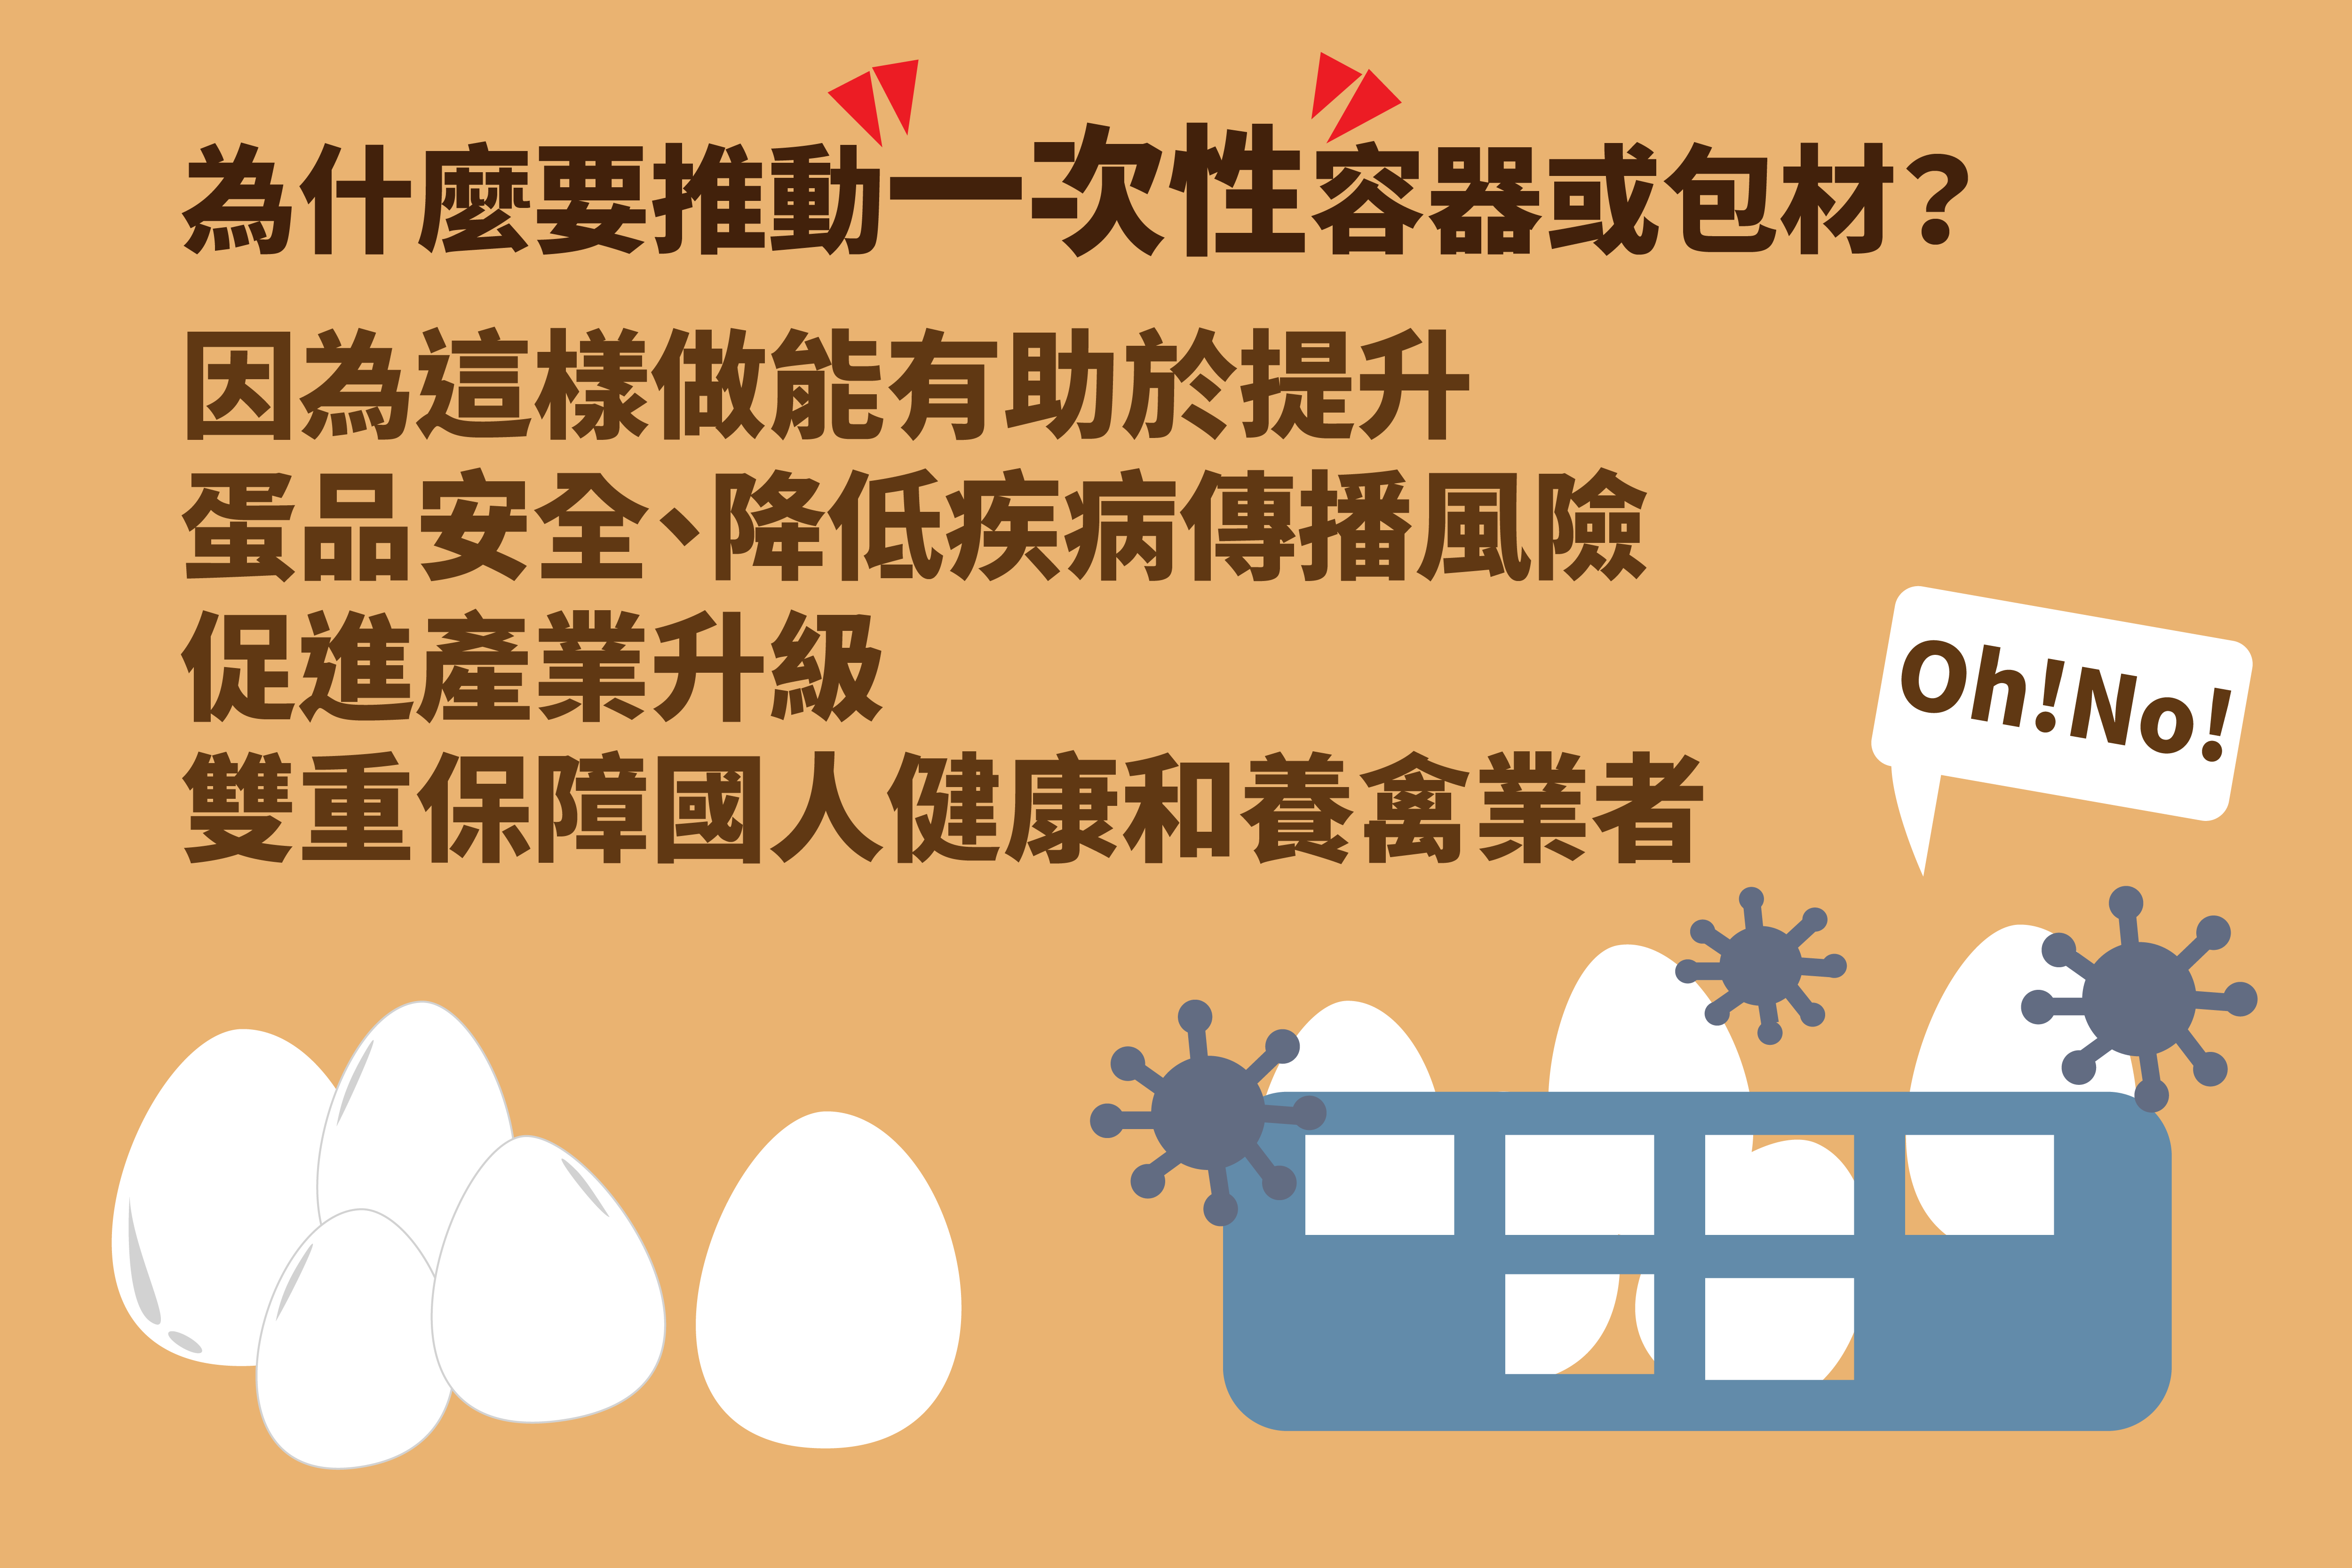 「裝載生鮮禽蛋應使用一次性之裝載容器或包材」規定說明圖卡 